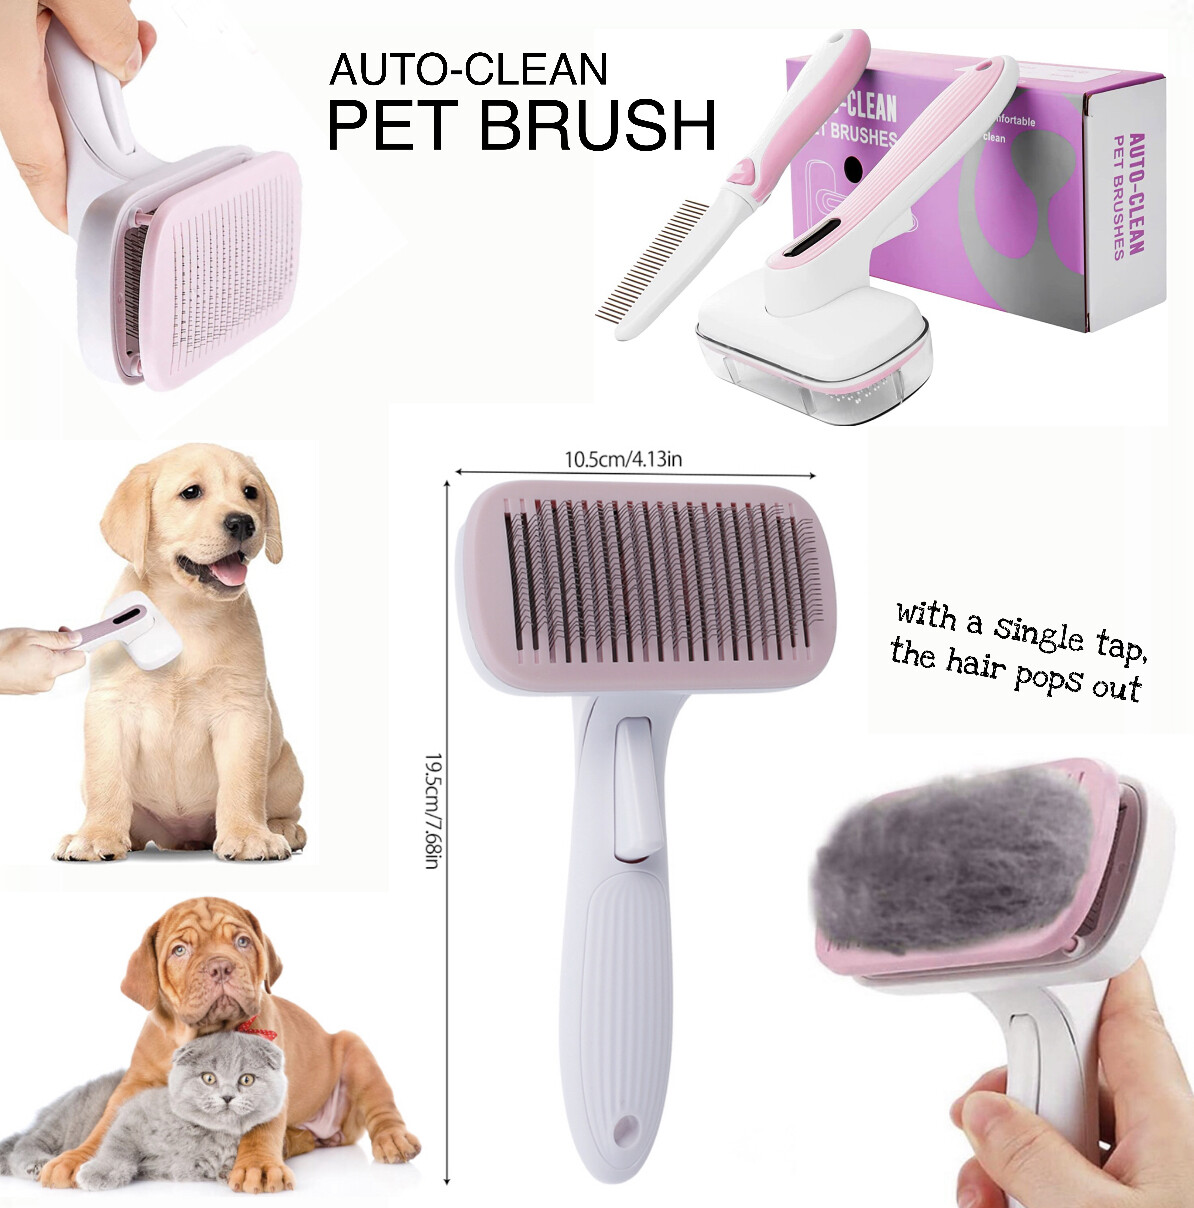 Auto-Clean Pet Brush